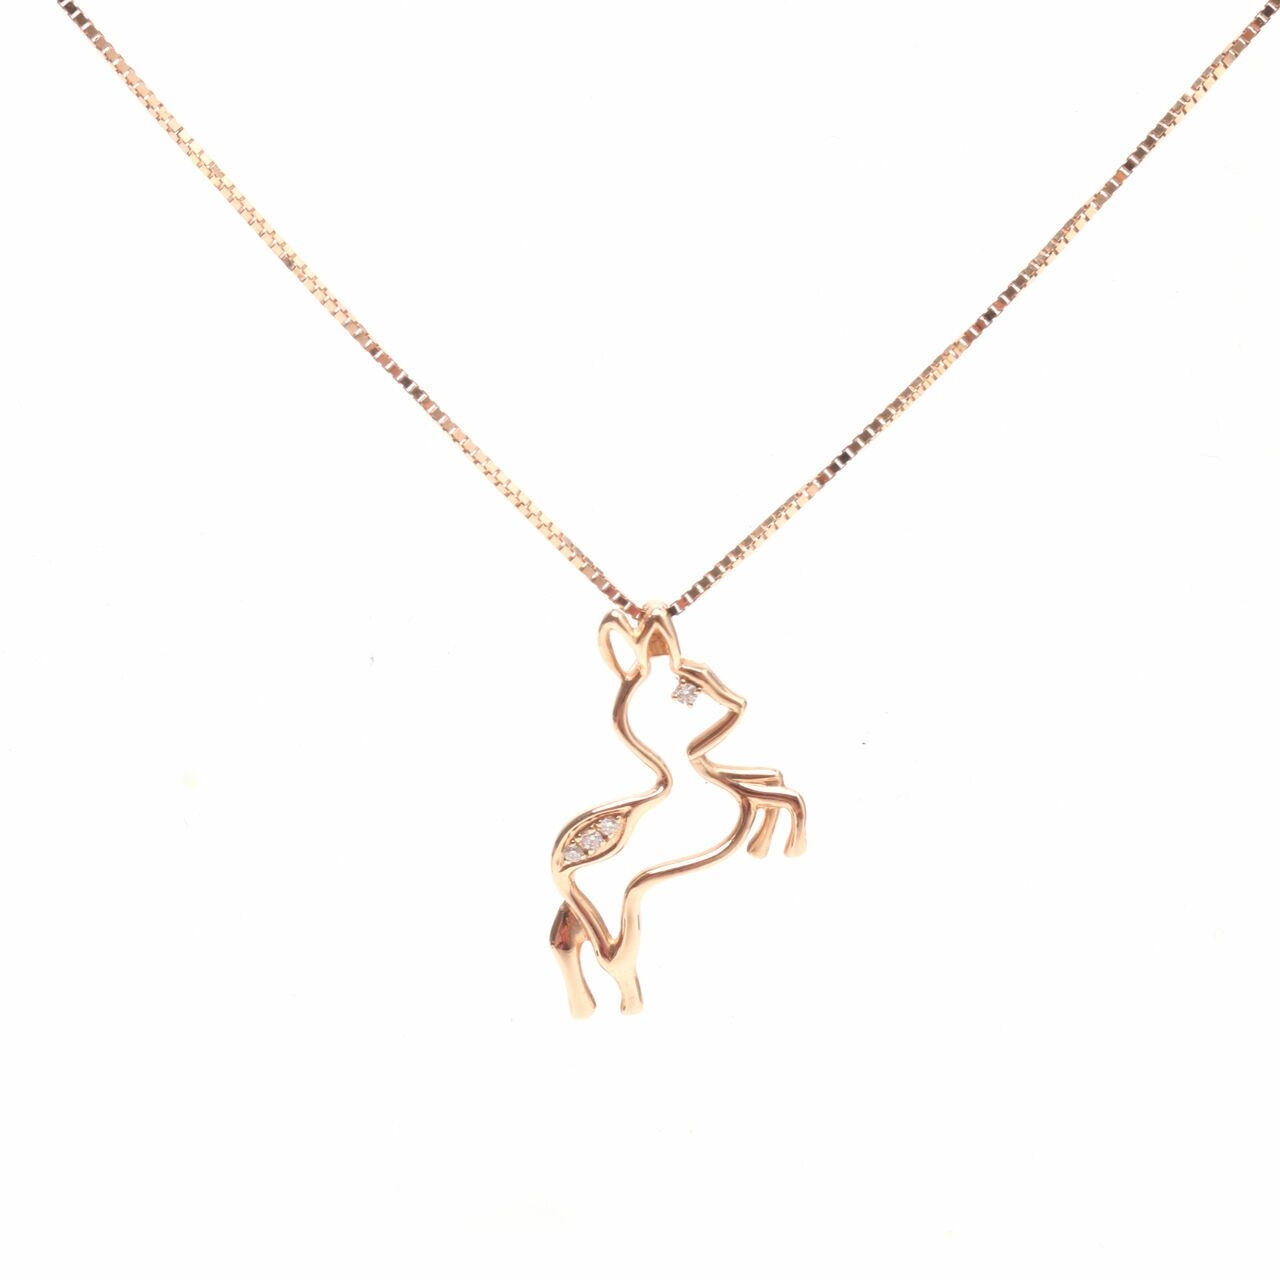  Frank & Co Deer Gold Necklace